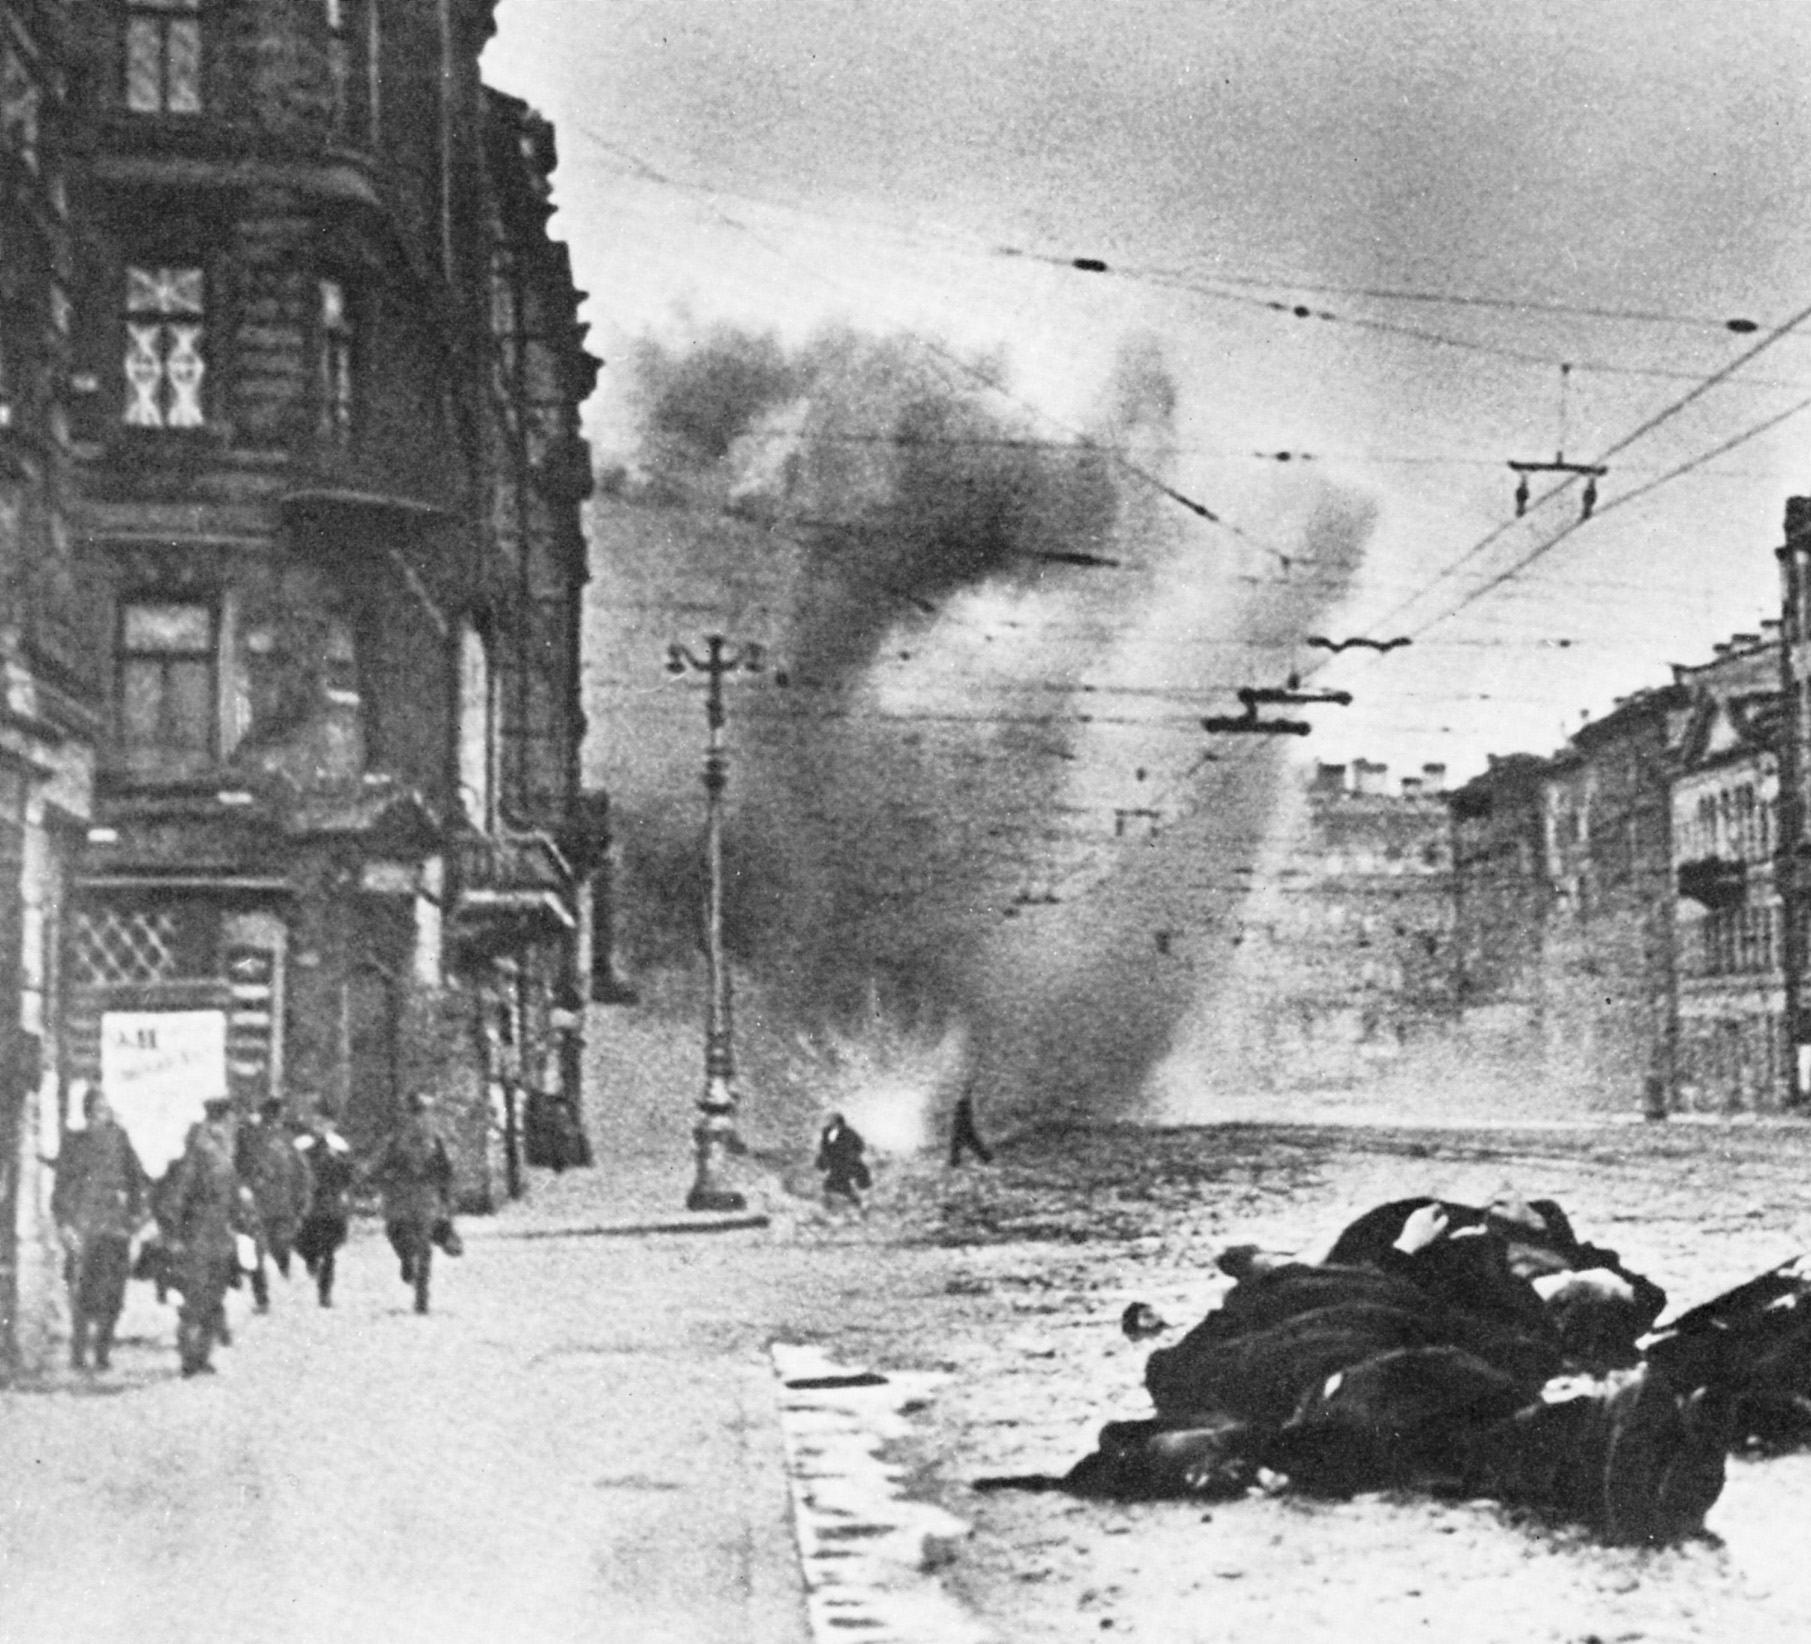 Citizens flee as shells explode on Leningrad’s main street Nevsky Prospekt. 